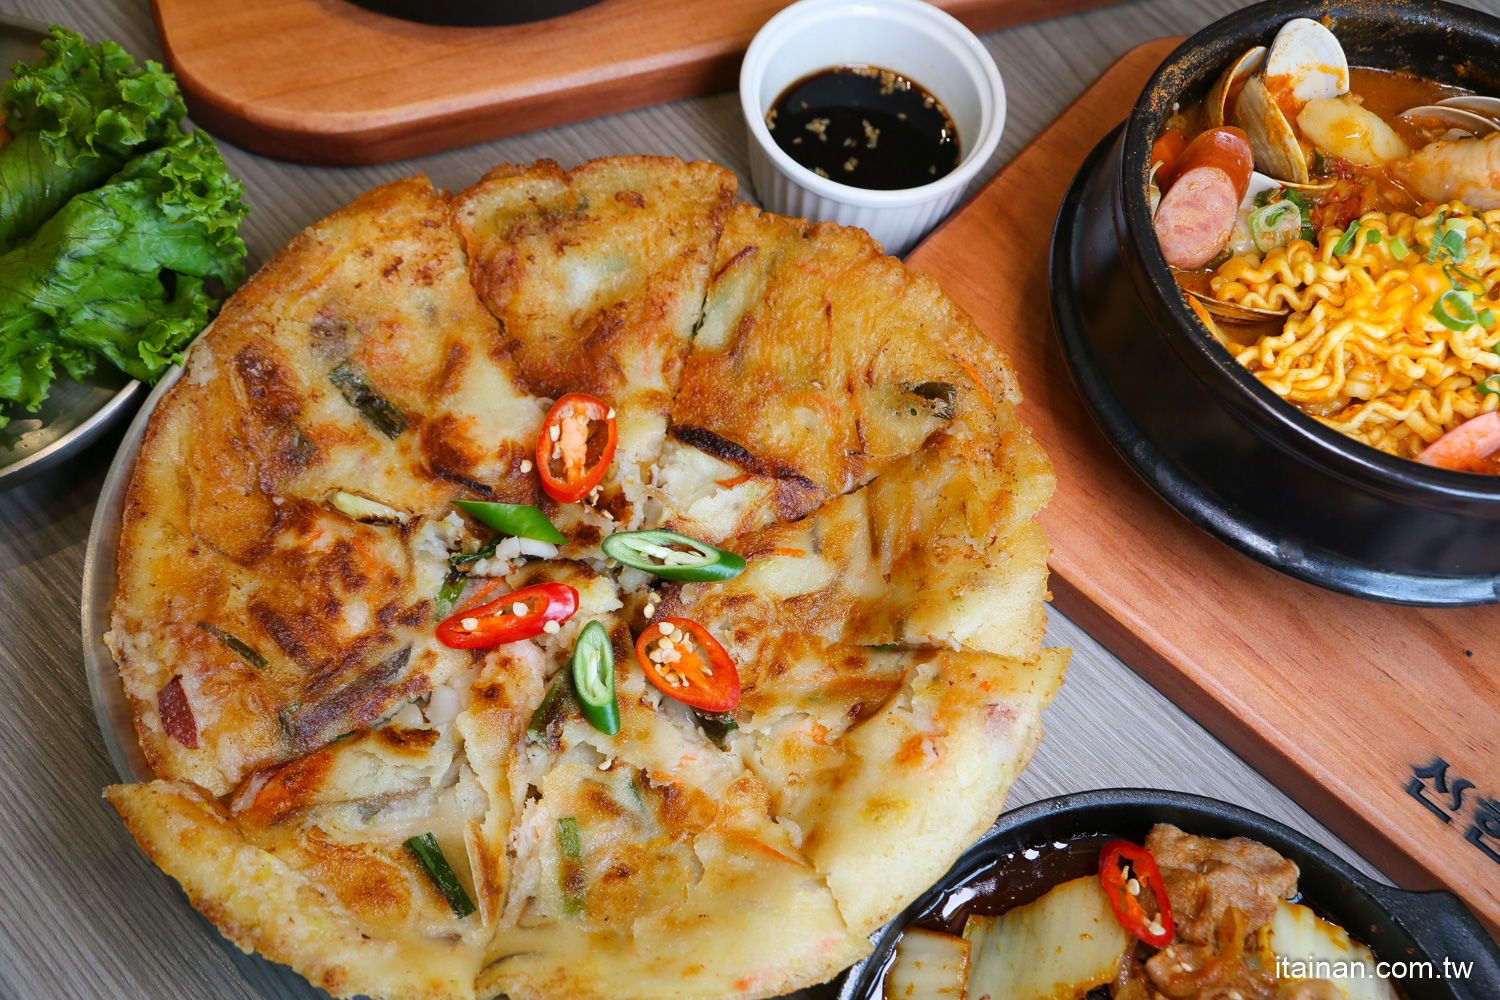 韓國料理,辛韓道,高雄餐廳,高雄美食,韓式料理,肉多多